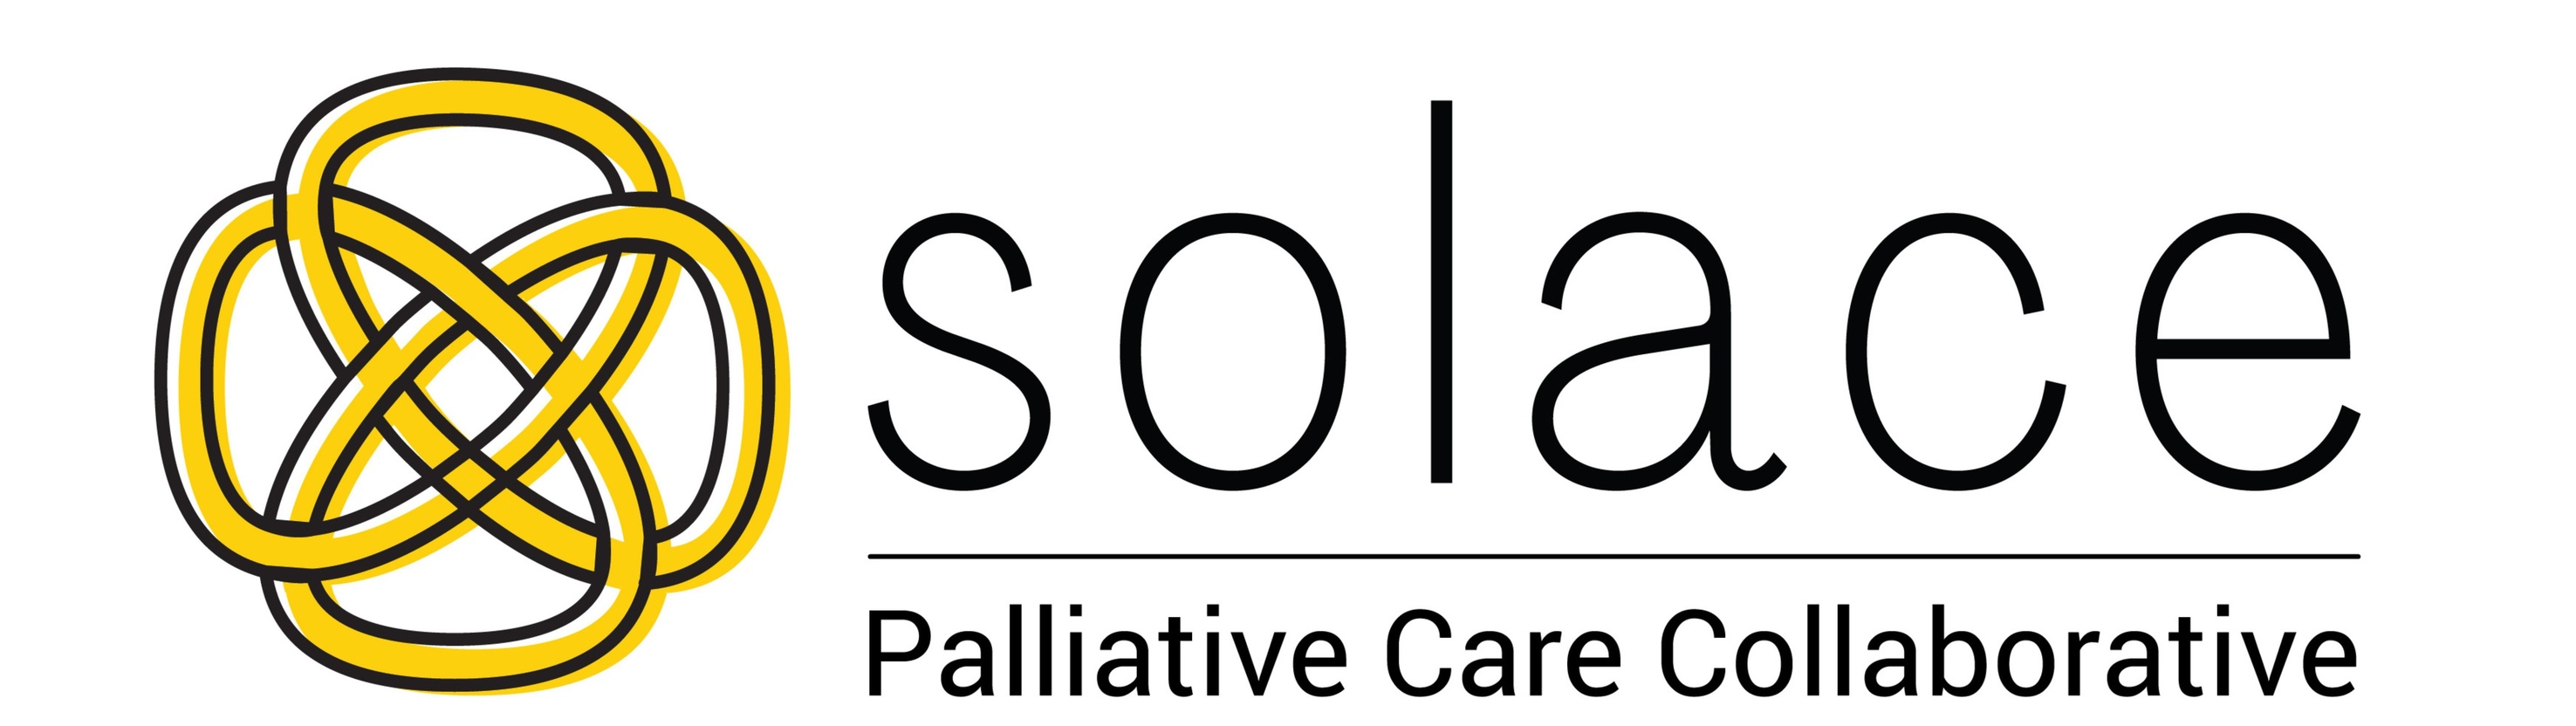 University of Iowa SOLACE Palliative Care Collaborative Icon 